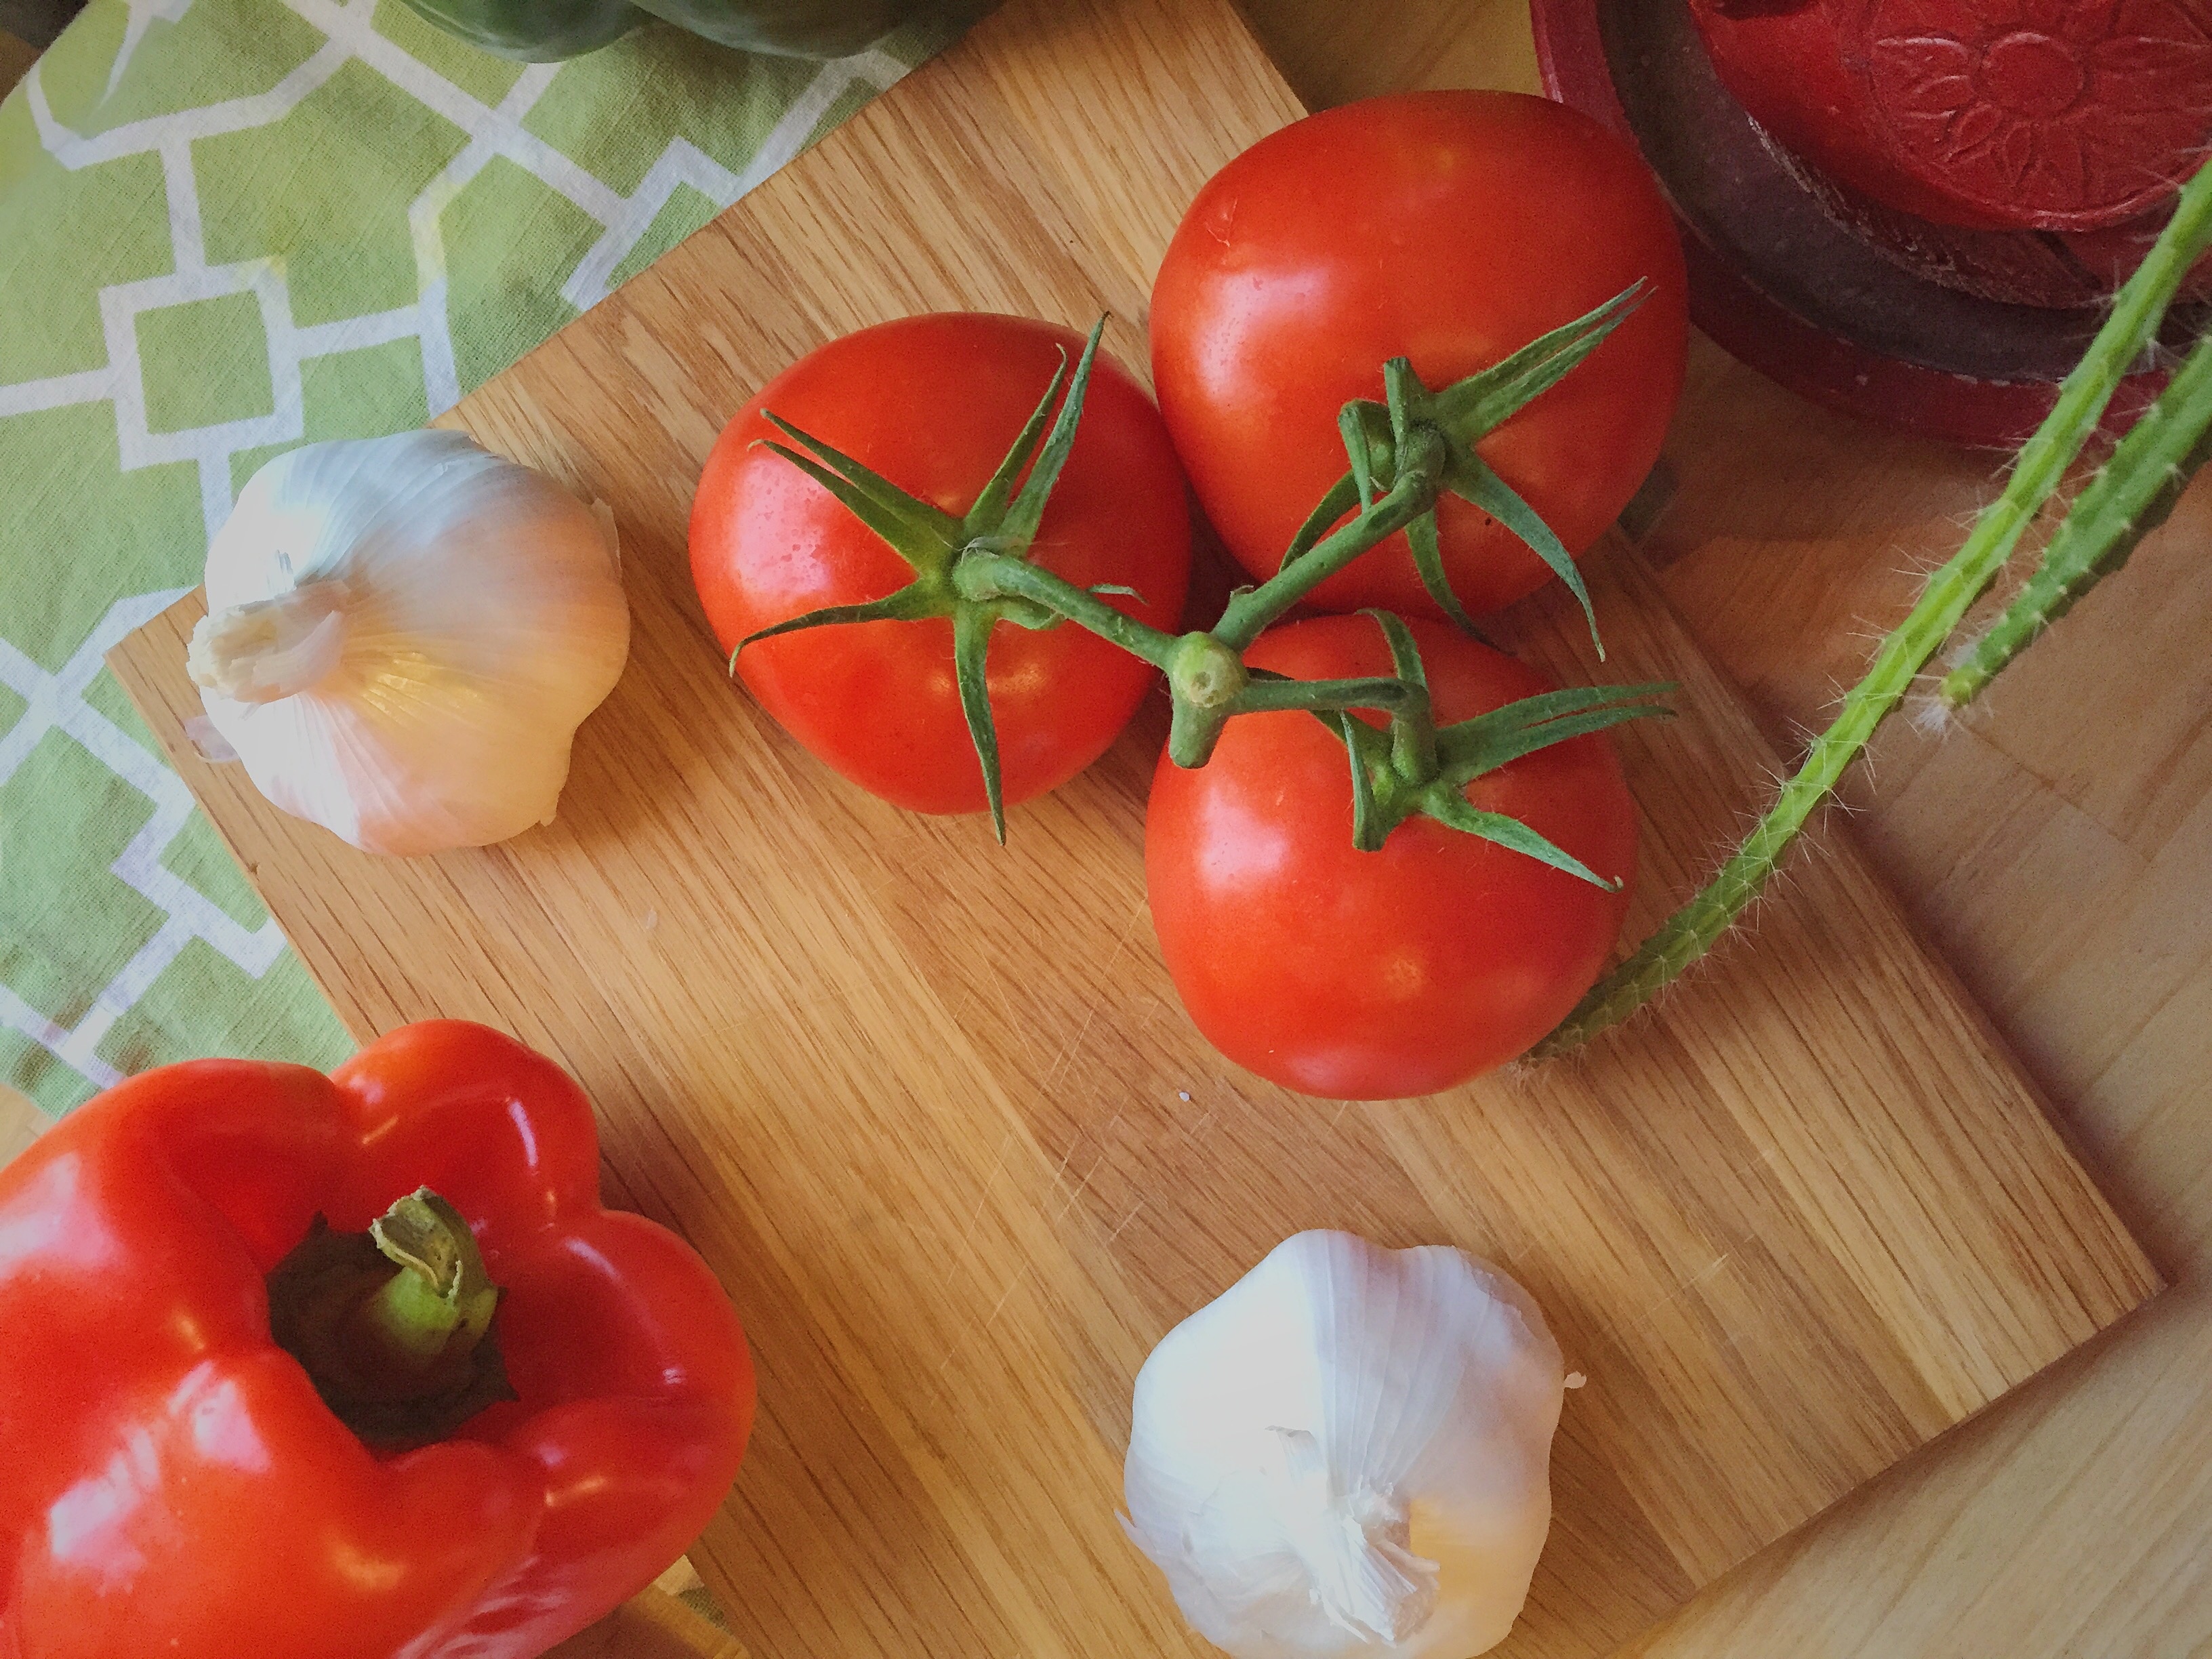 three red tomatoes and white garlic